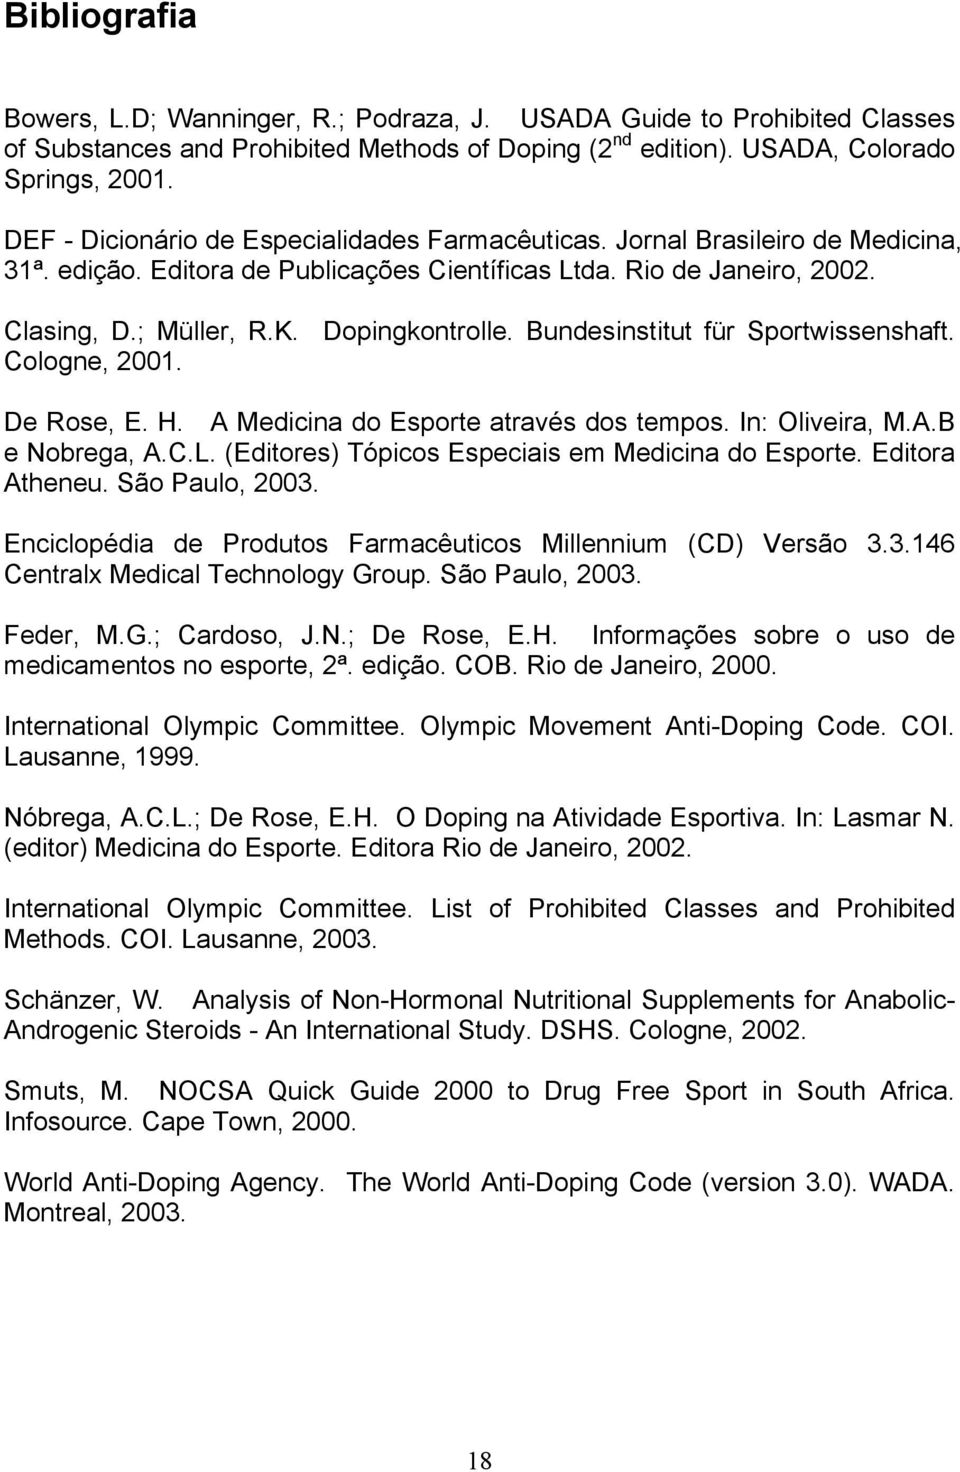 Bundesinstitut für Sportwissenshaft. Cologne, 2001. De Rose, E. H. A Medicina do Esporte através dos tempos. In: Oliveira, M.A.B e Nobrega, A.C.L. (Editores) Tópicos Especiais em Medicina do Esporte.